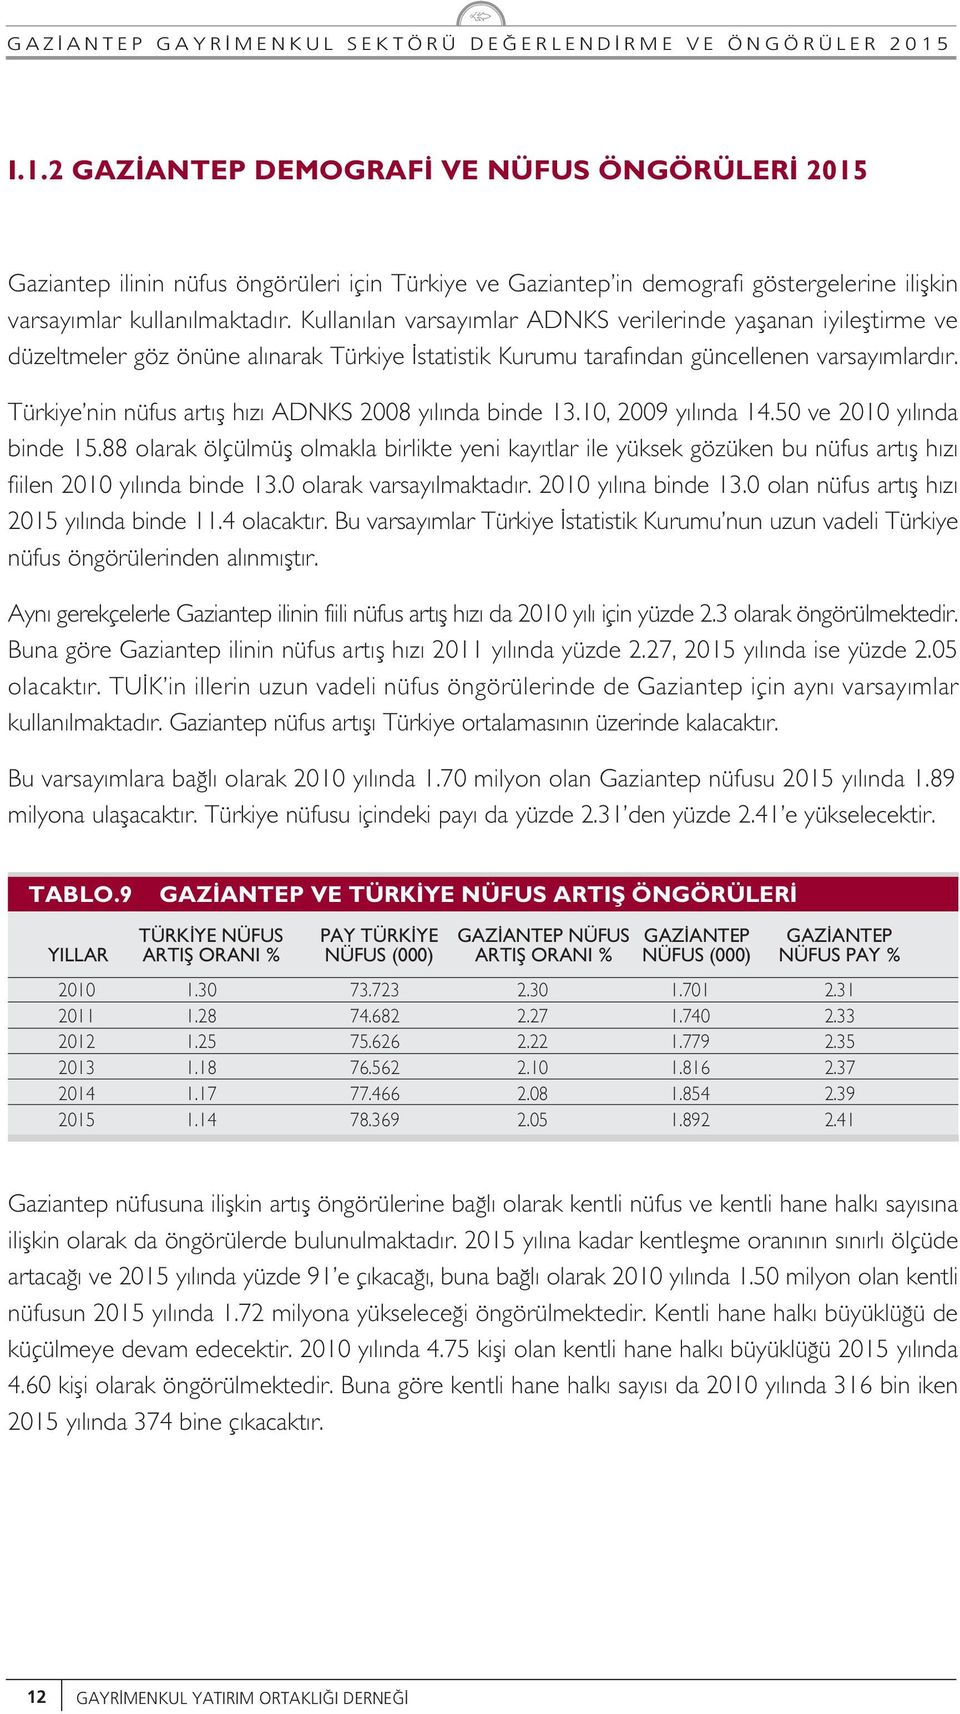 Türkiye nin nüfus art fl h z ADNKS 2008 y l nda binde 13.10, 2009 y l nda 14.50 ve 2010 y l nda binde 15.